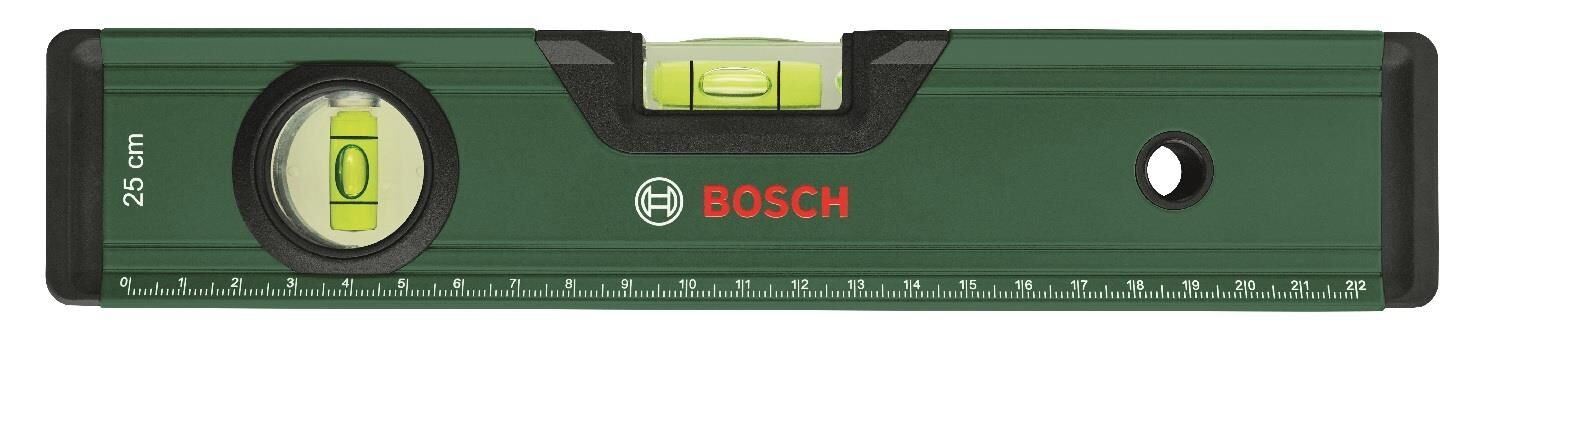 Bosch Su Terazisi 25cm 1600A027PL